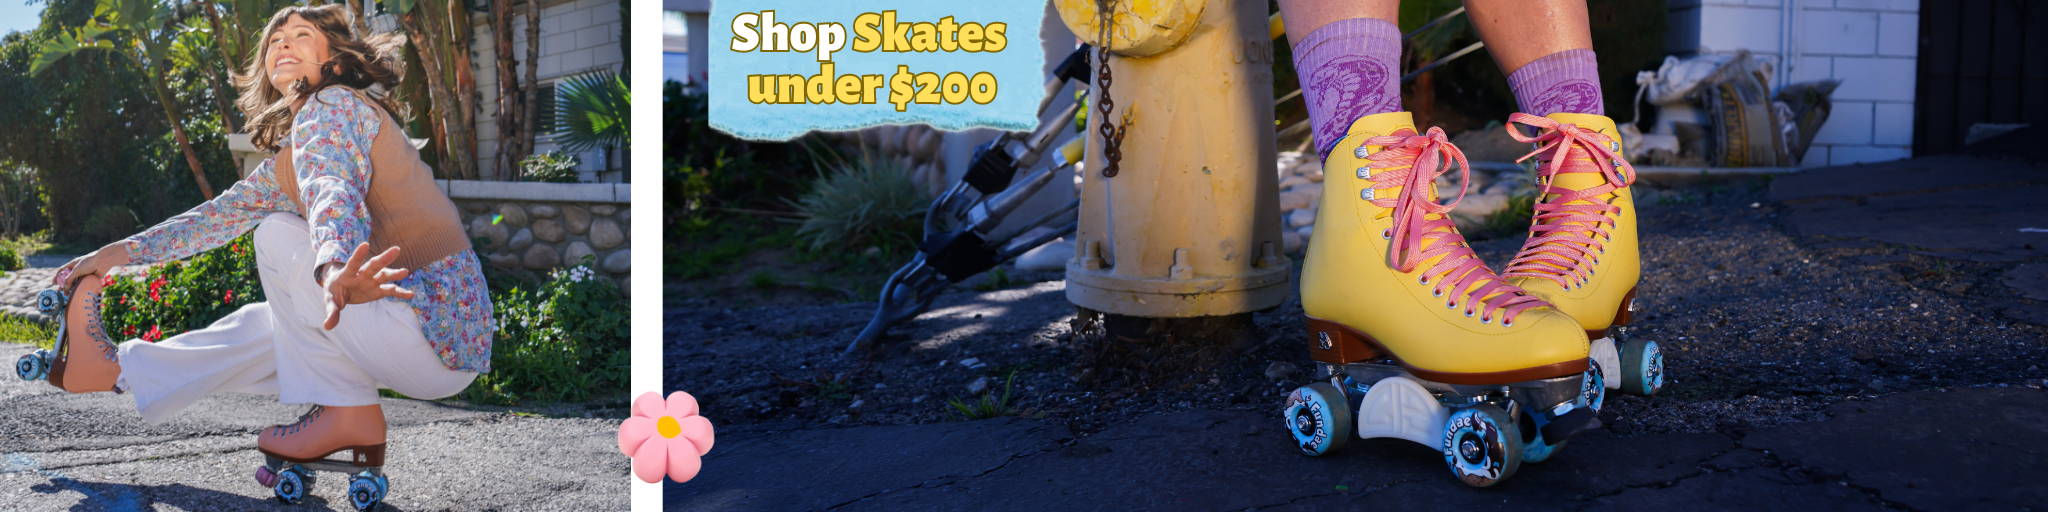 Shop skates under $200